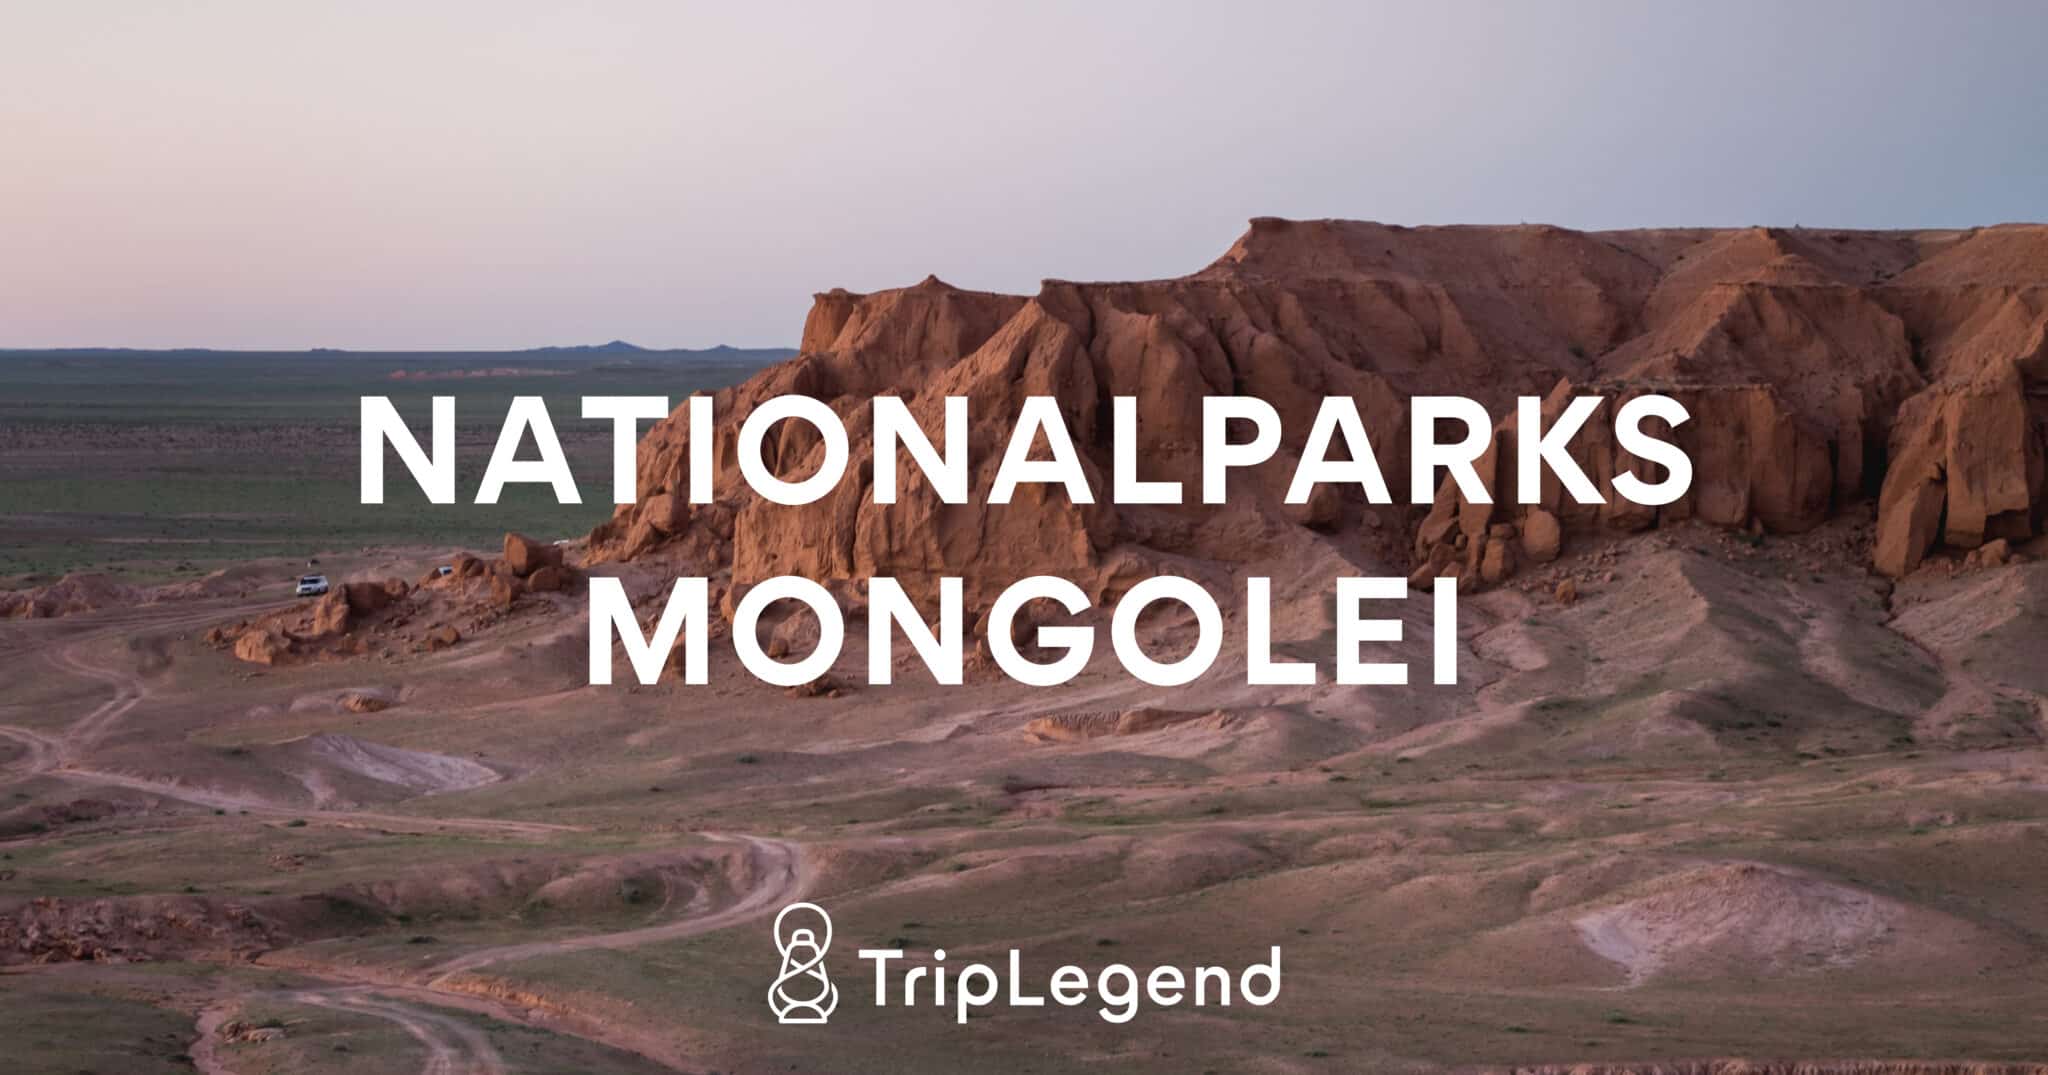 Mongolian kansallispuistoja käsittelevän artikkelin esittelykuva